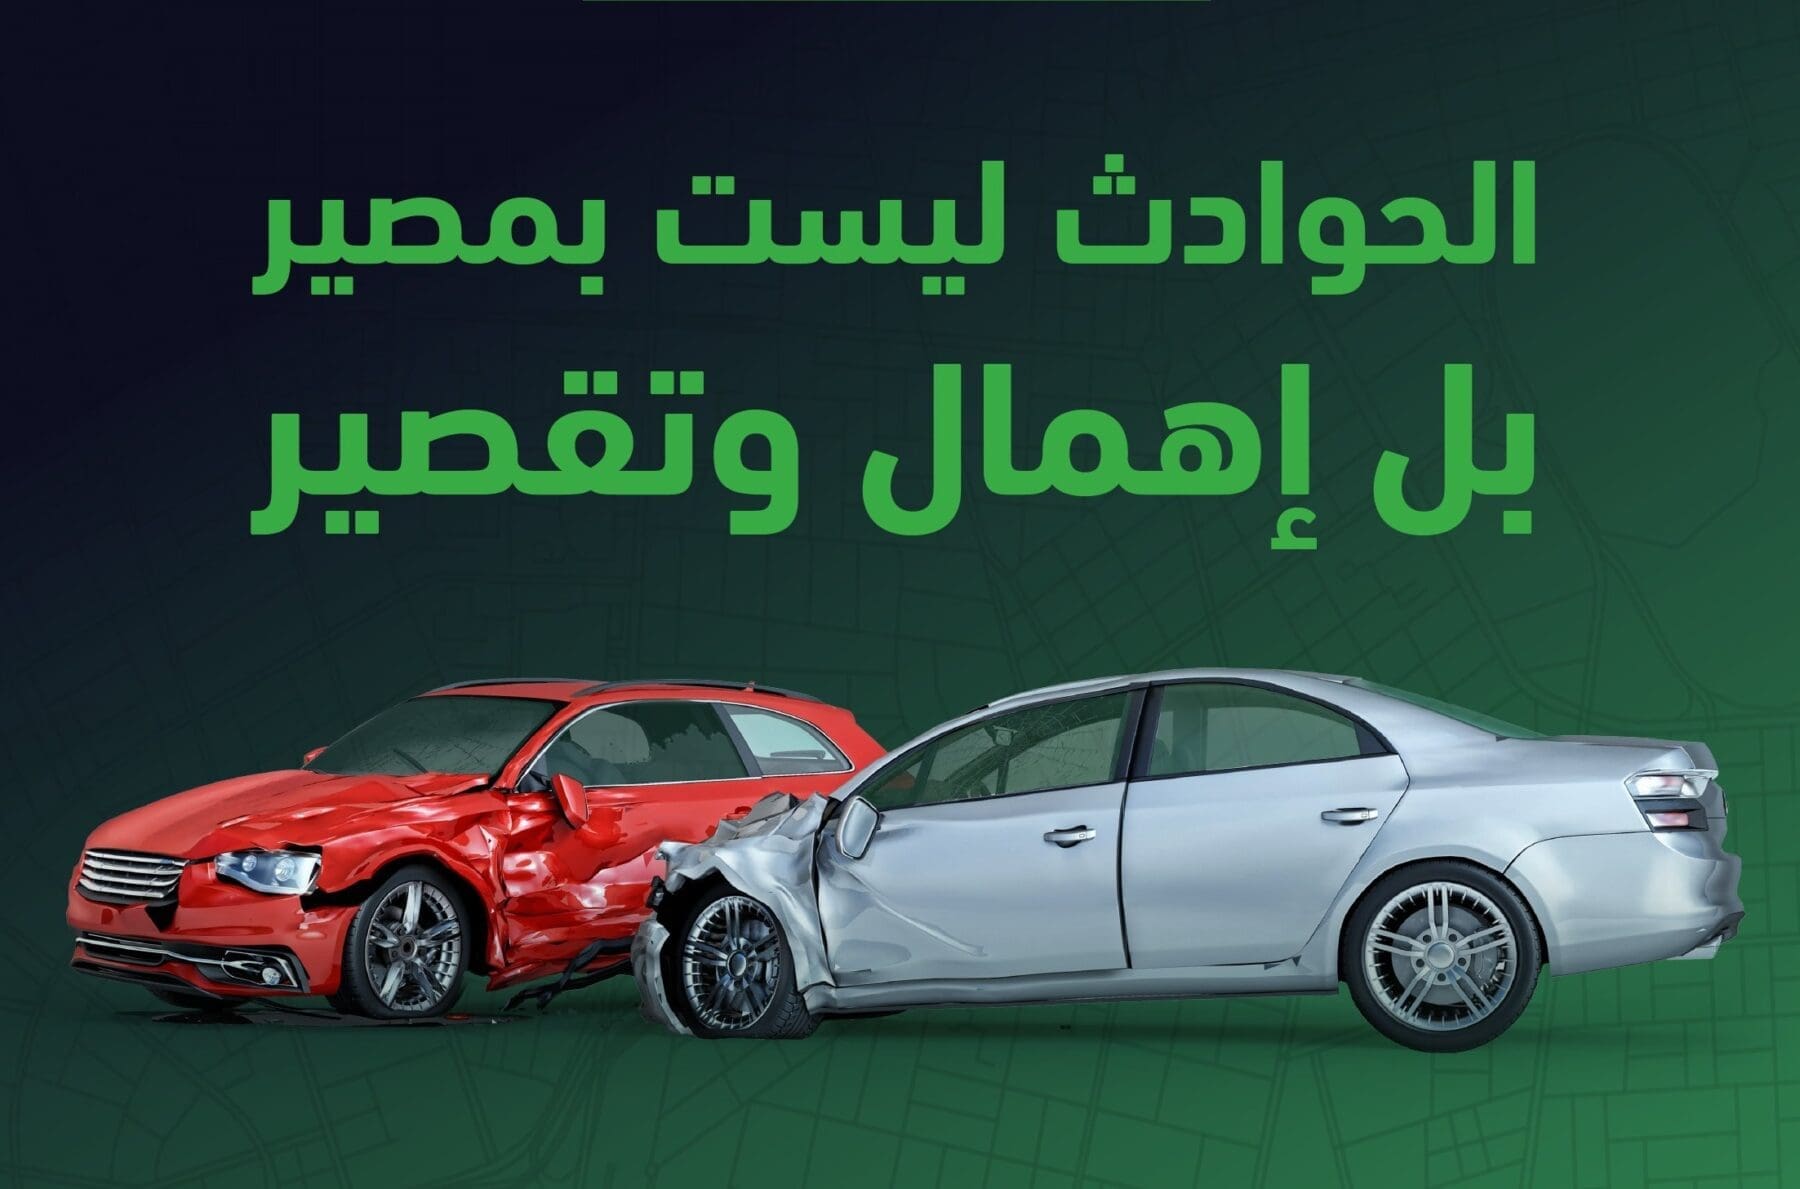 المرور السعودي يبين أهمية إشارة الانعطاف فكن مهتم